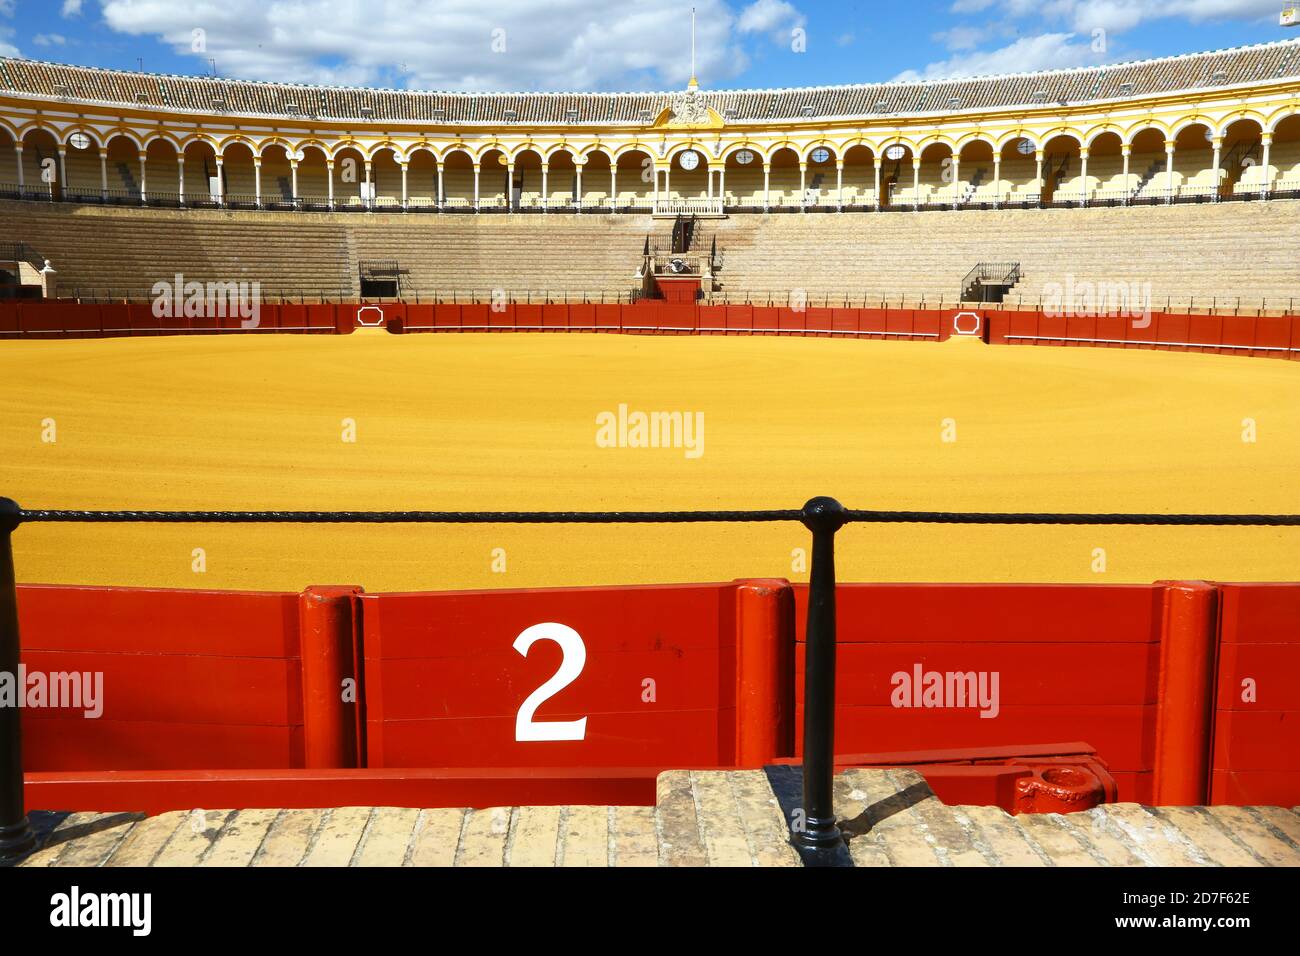 Arènes de Séville. Le jaune du sable et le rouge de la clôture sont les couleurs du drapeau espagnol. Banque D'Images